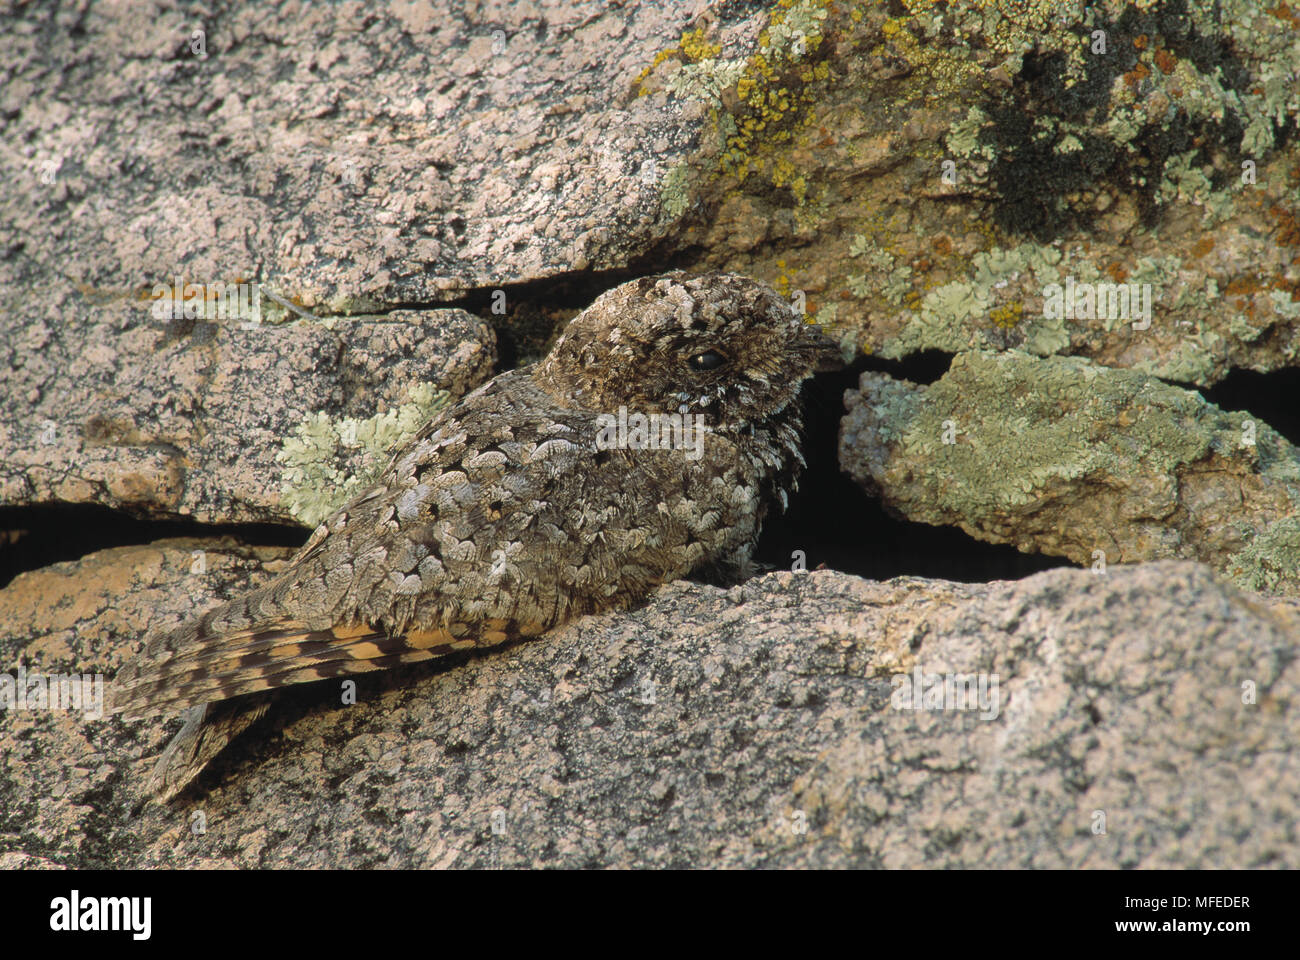 COMMON POORWILL Phalaenoptilus nuttallii camouflaged, Arizona, USA Stock Photo